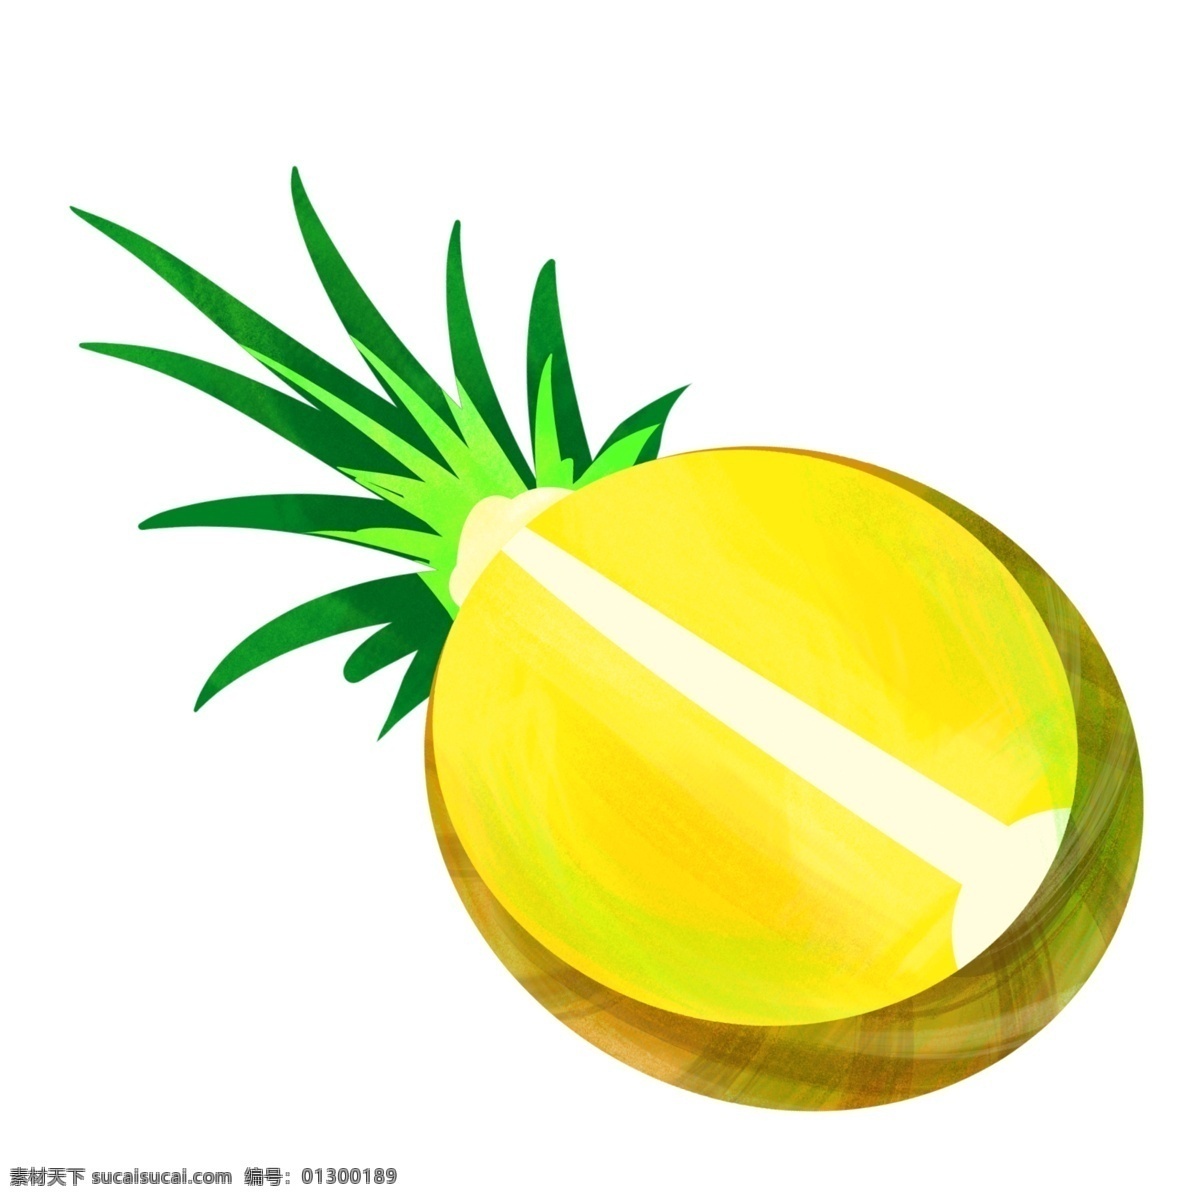 黄色卡通菠萝 菠萝 黄色 水果